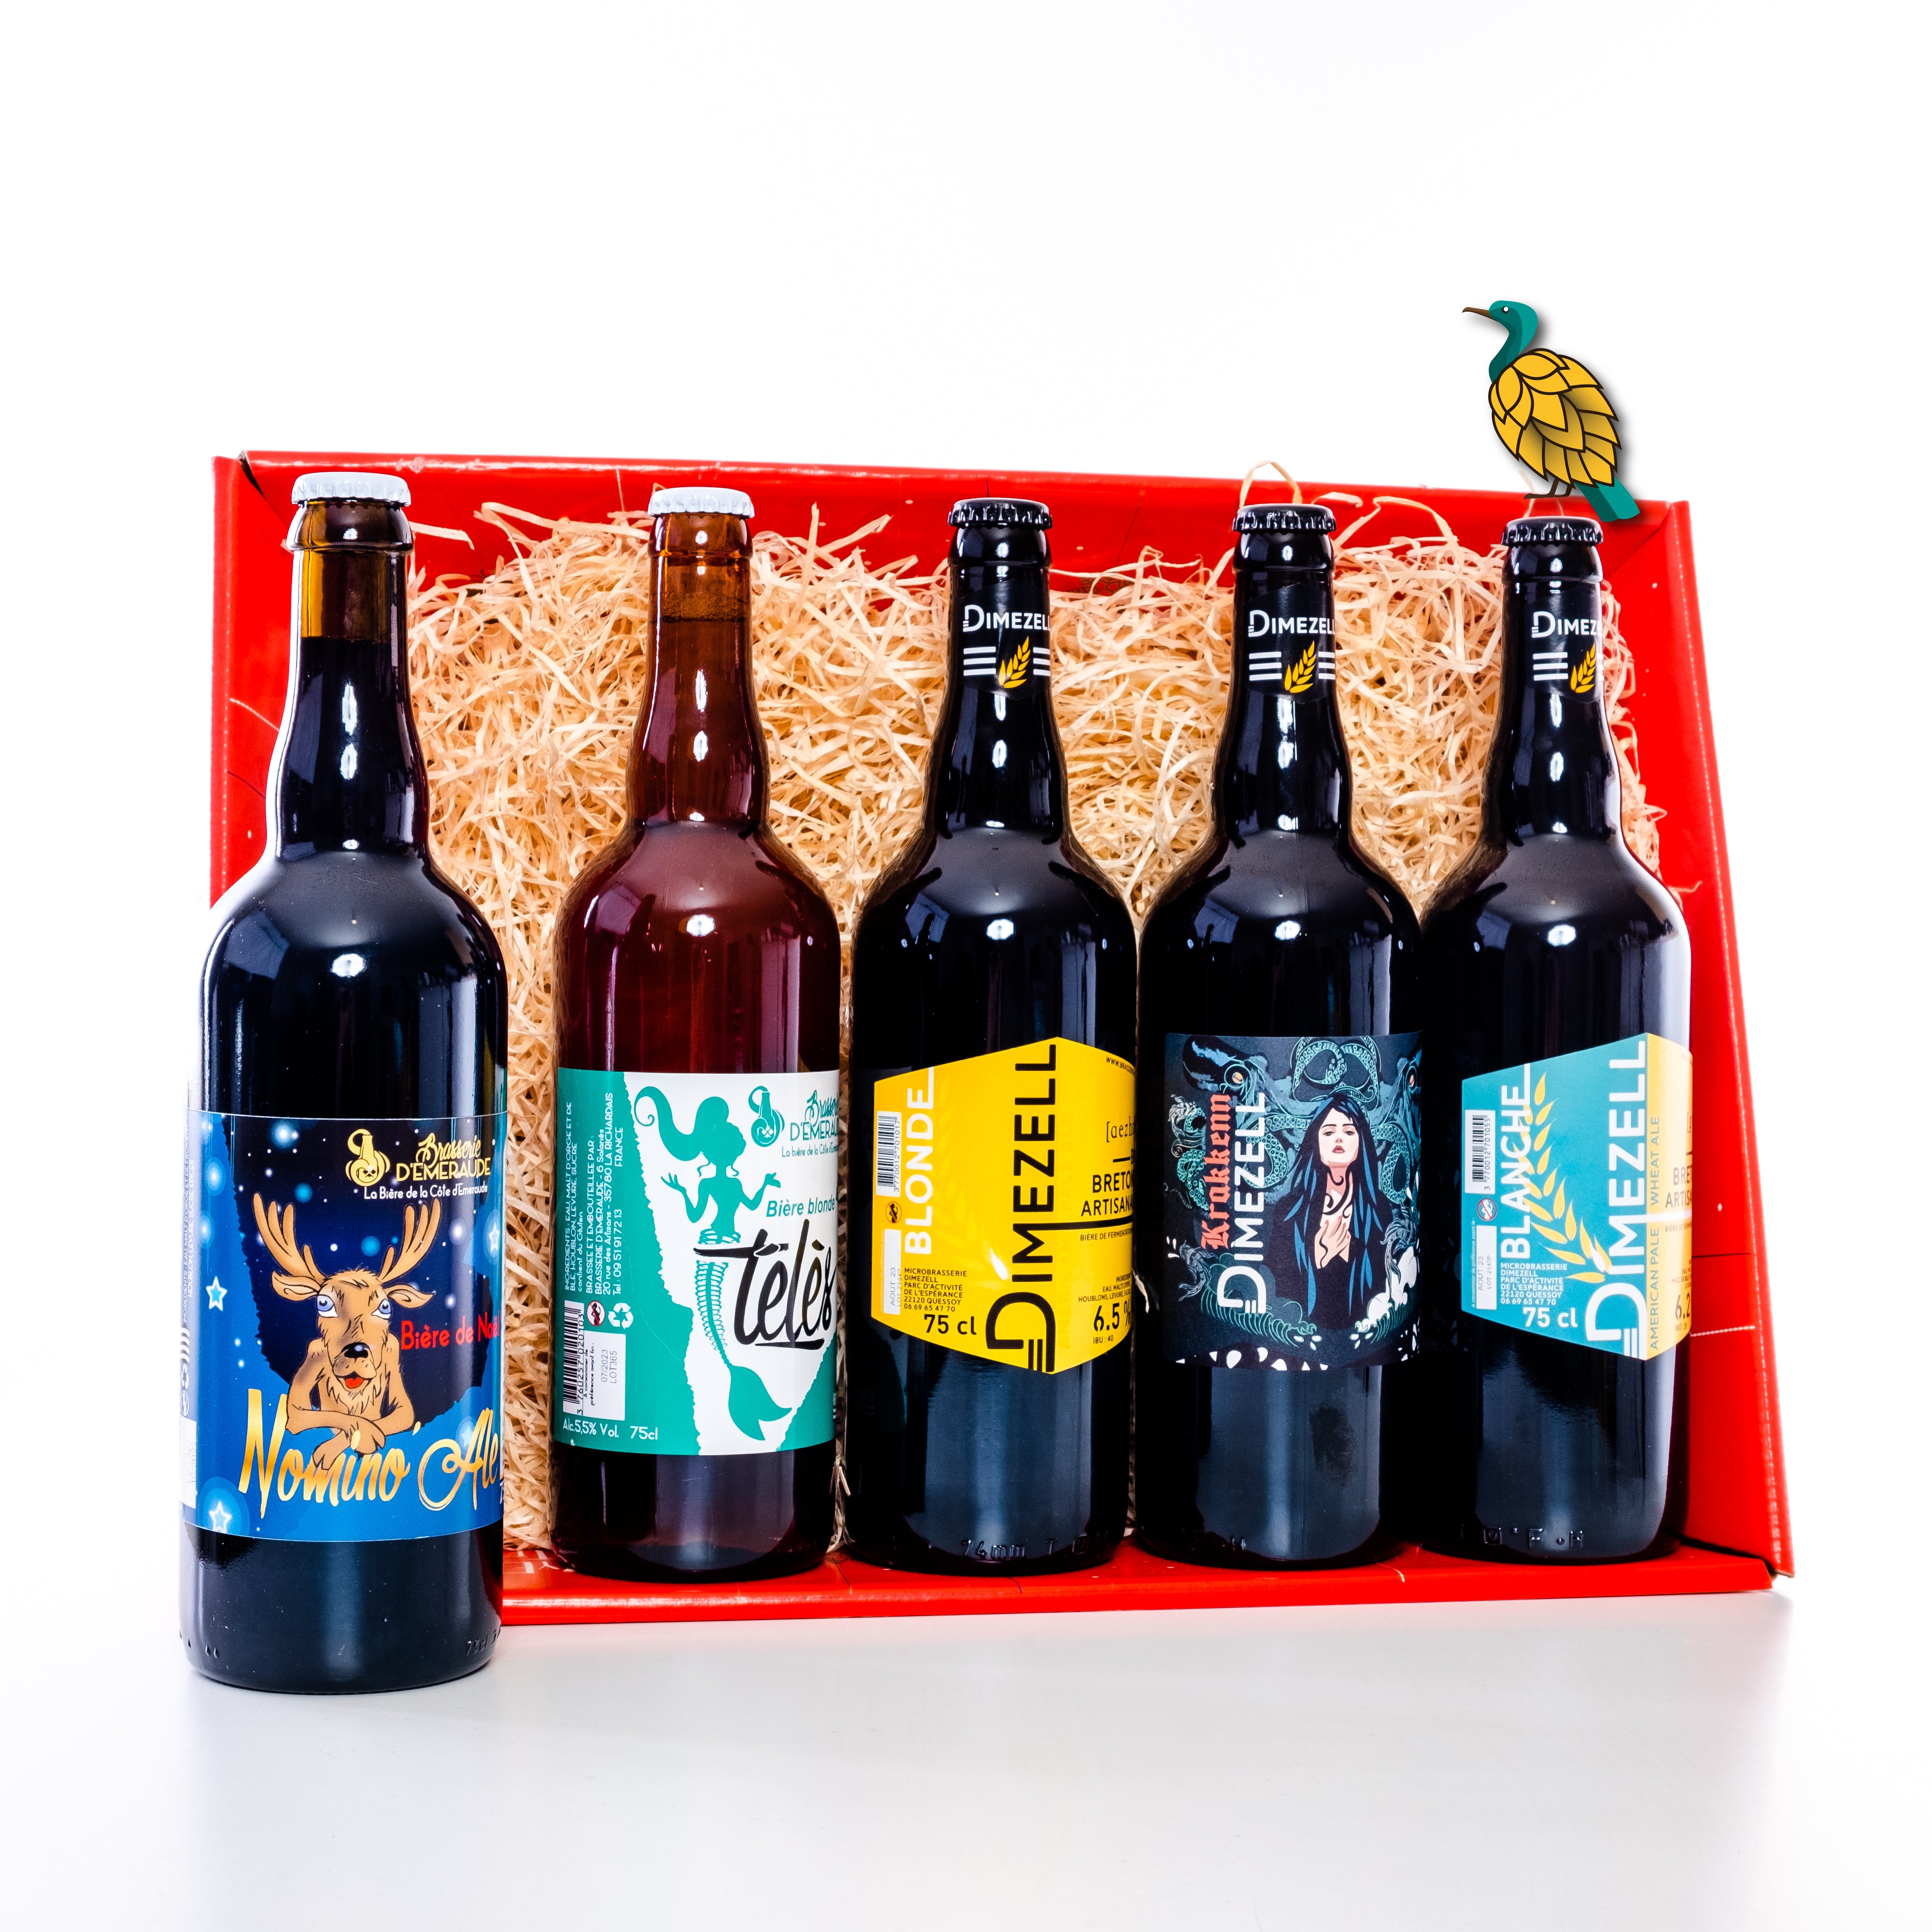 Voici les 7 bières artisanales de Noël créées par des brasseries de l'Oise